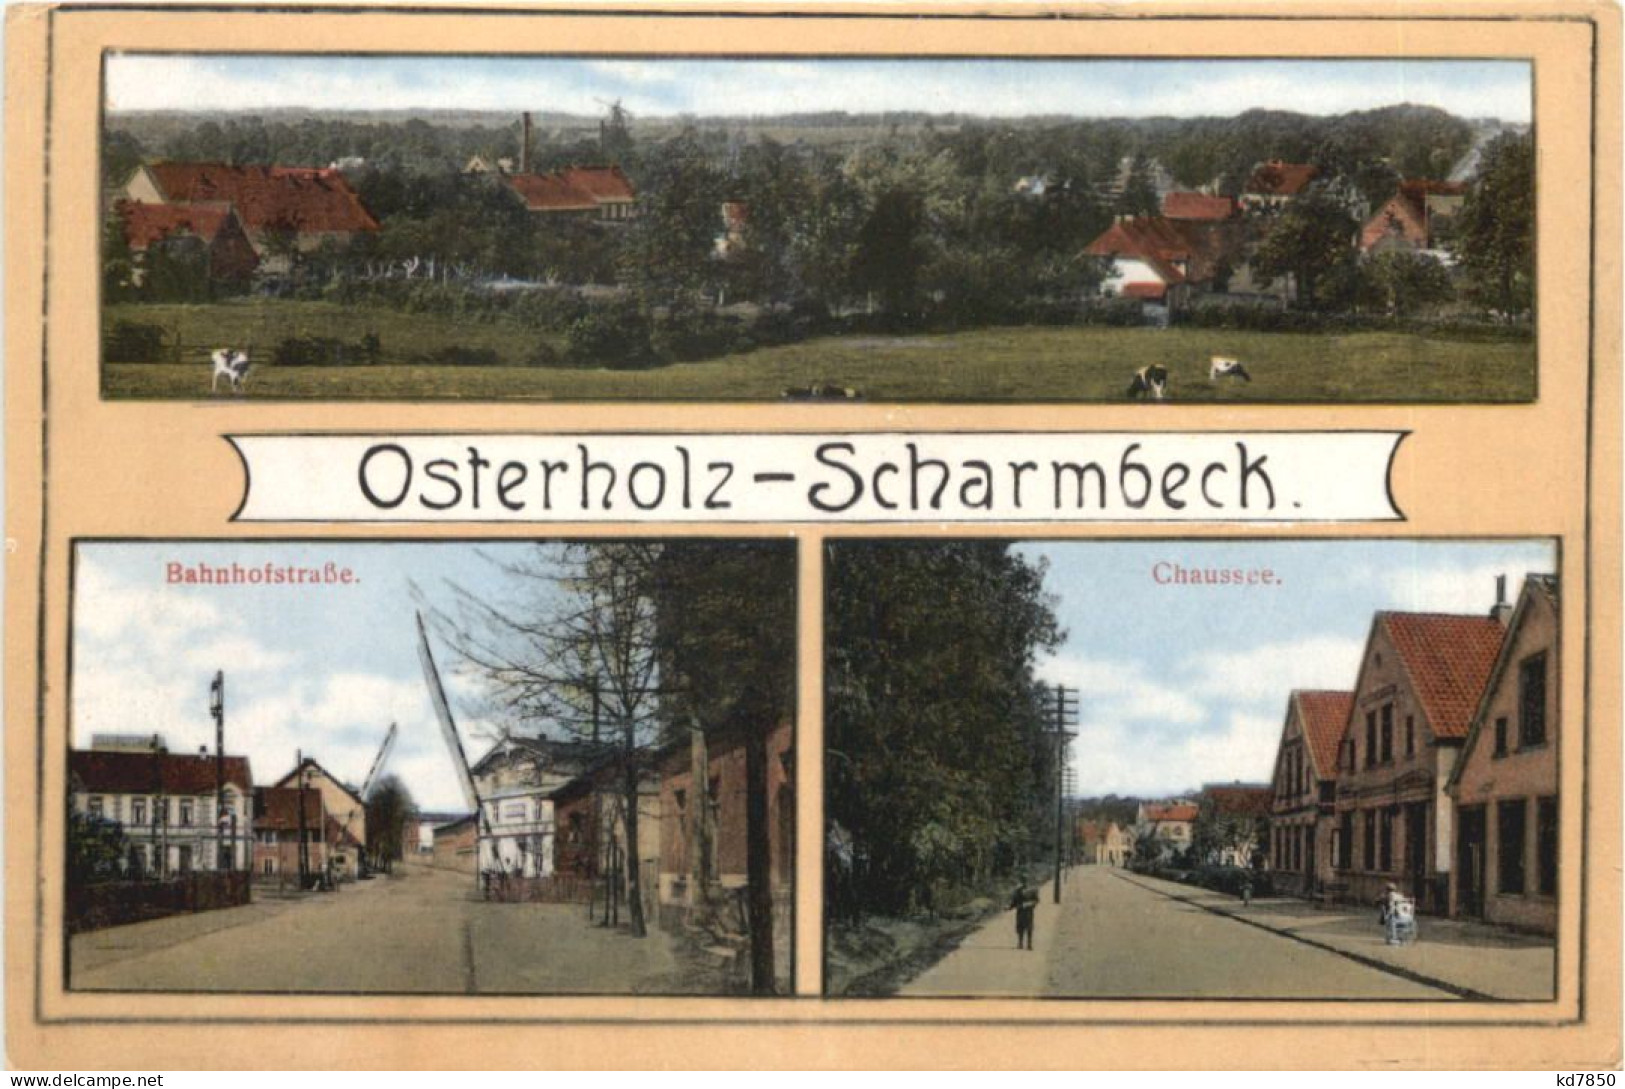 Osterholz-Scharmbeck - Osterholz-Schambeck